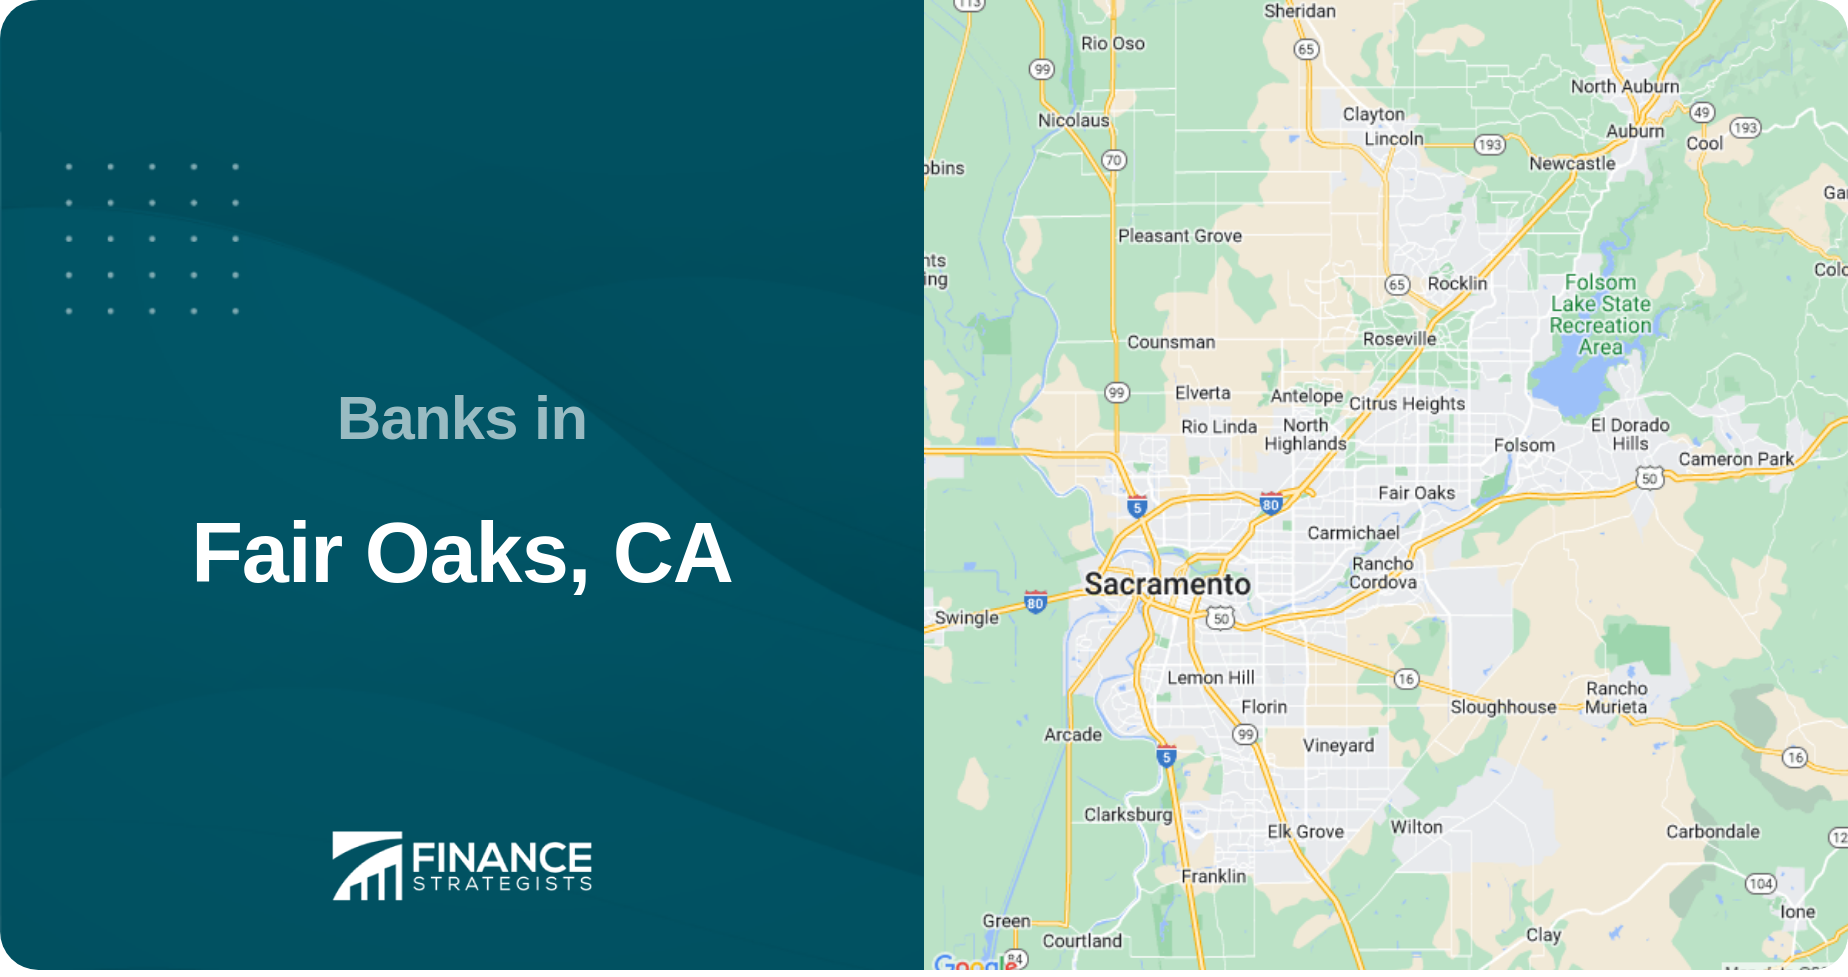 Banks in Fair Oaks, CA